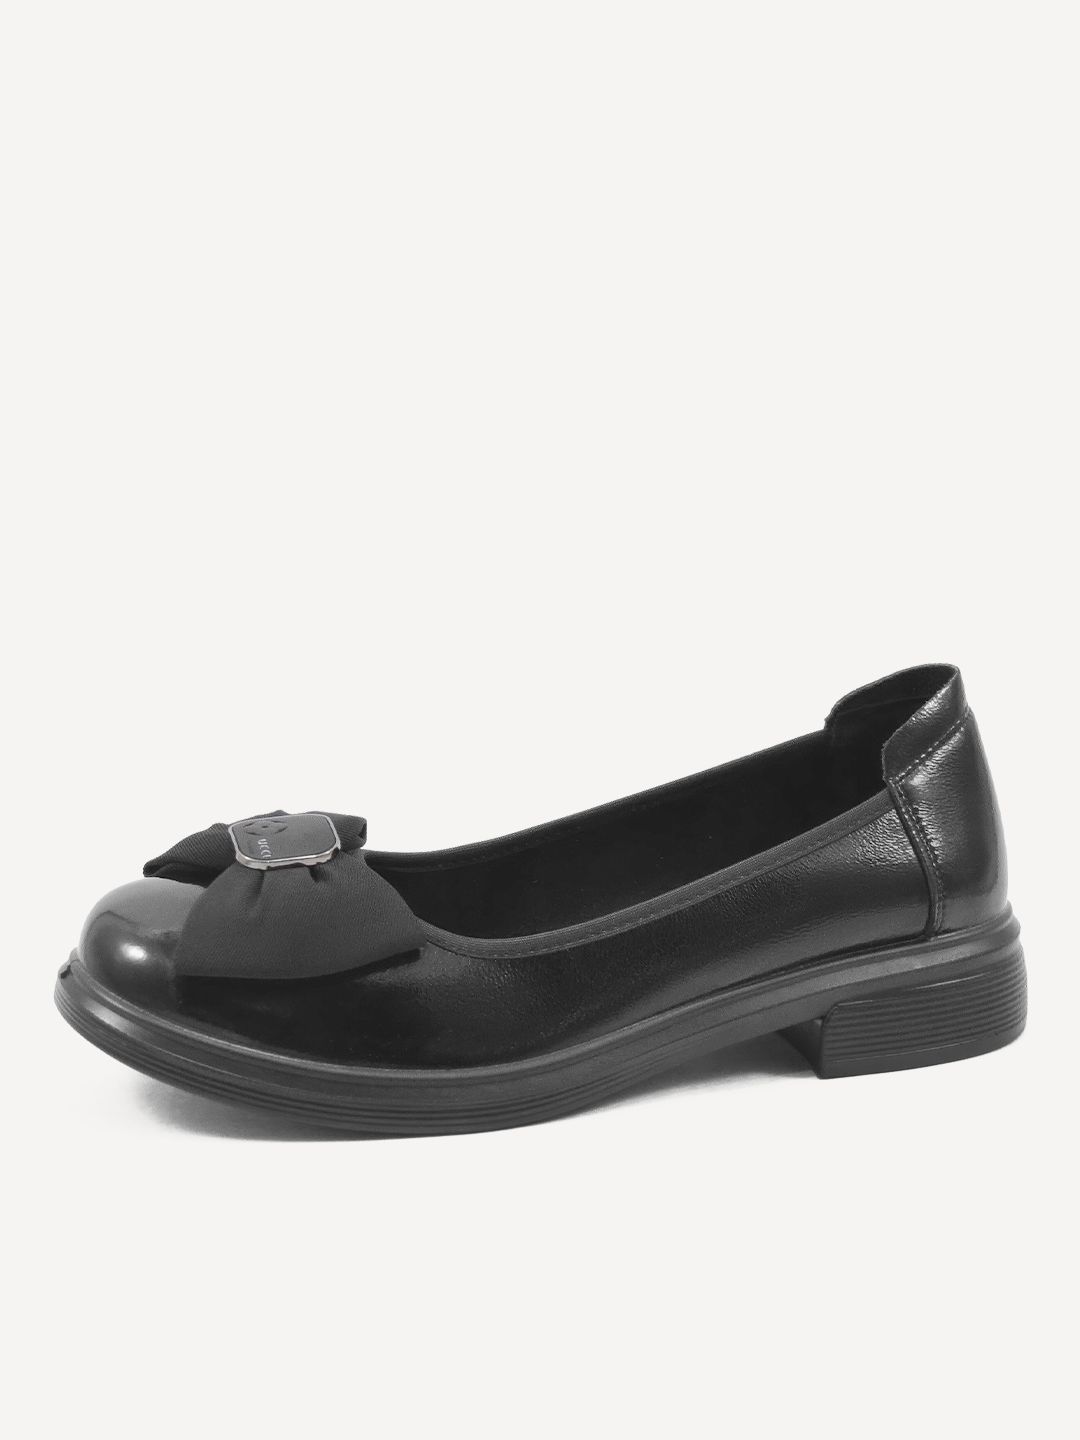 Туфли женские Baden ME306-022 черные 36 RU